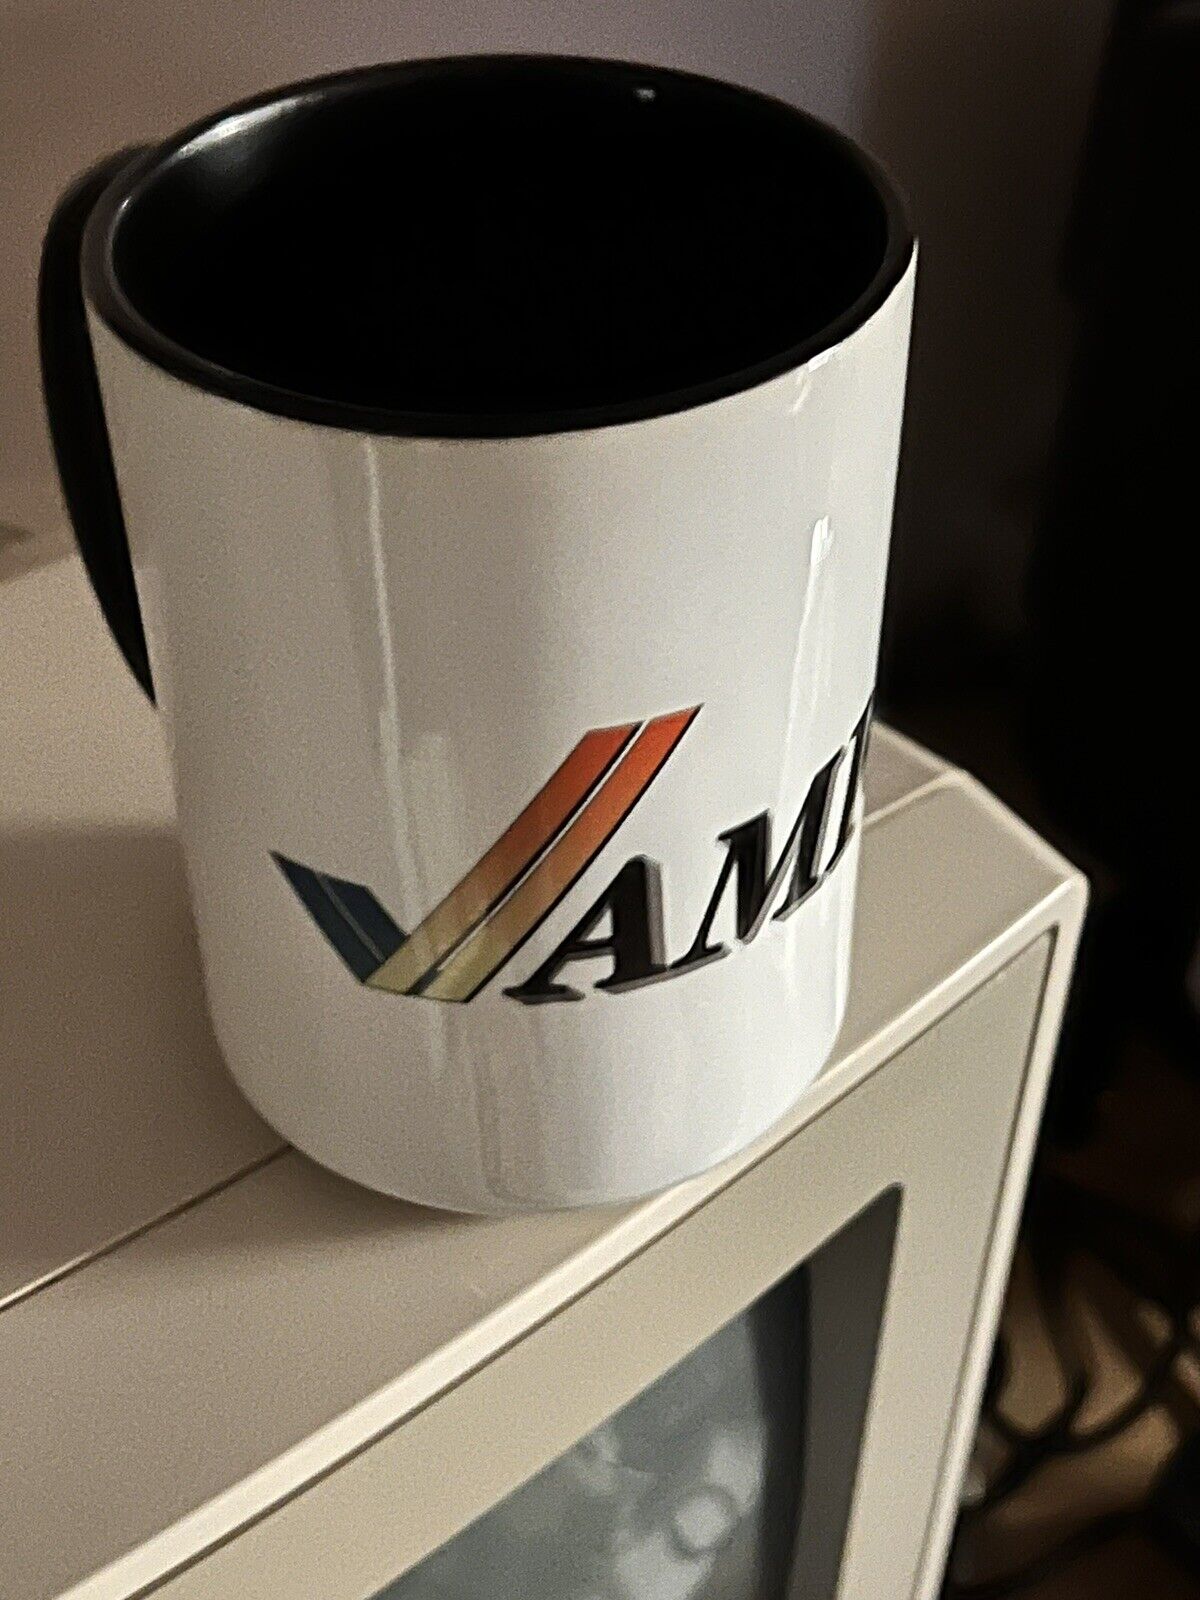 Commodore Amiga mug 15 oz